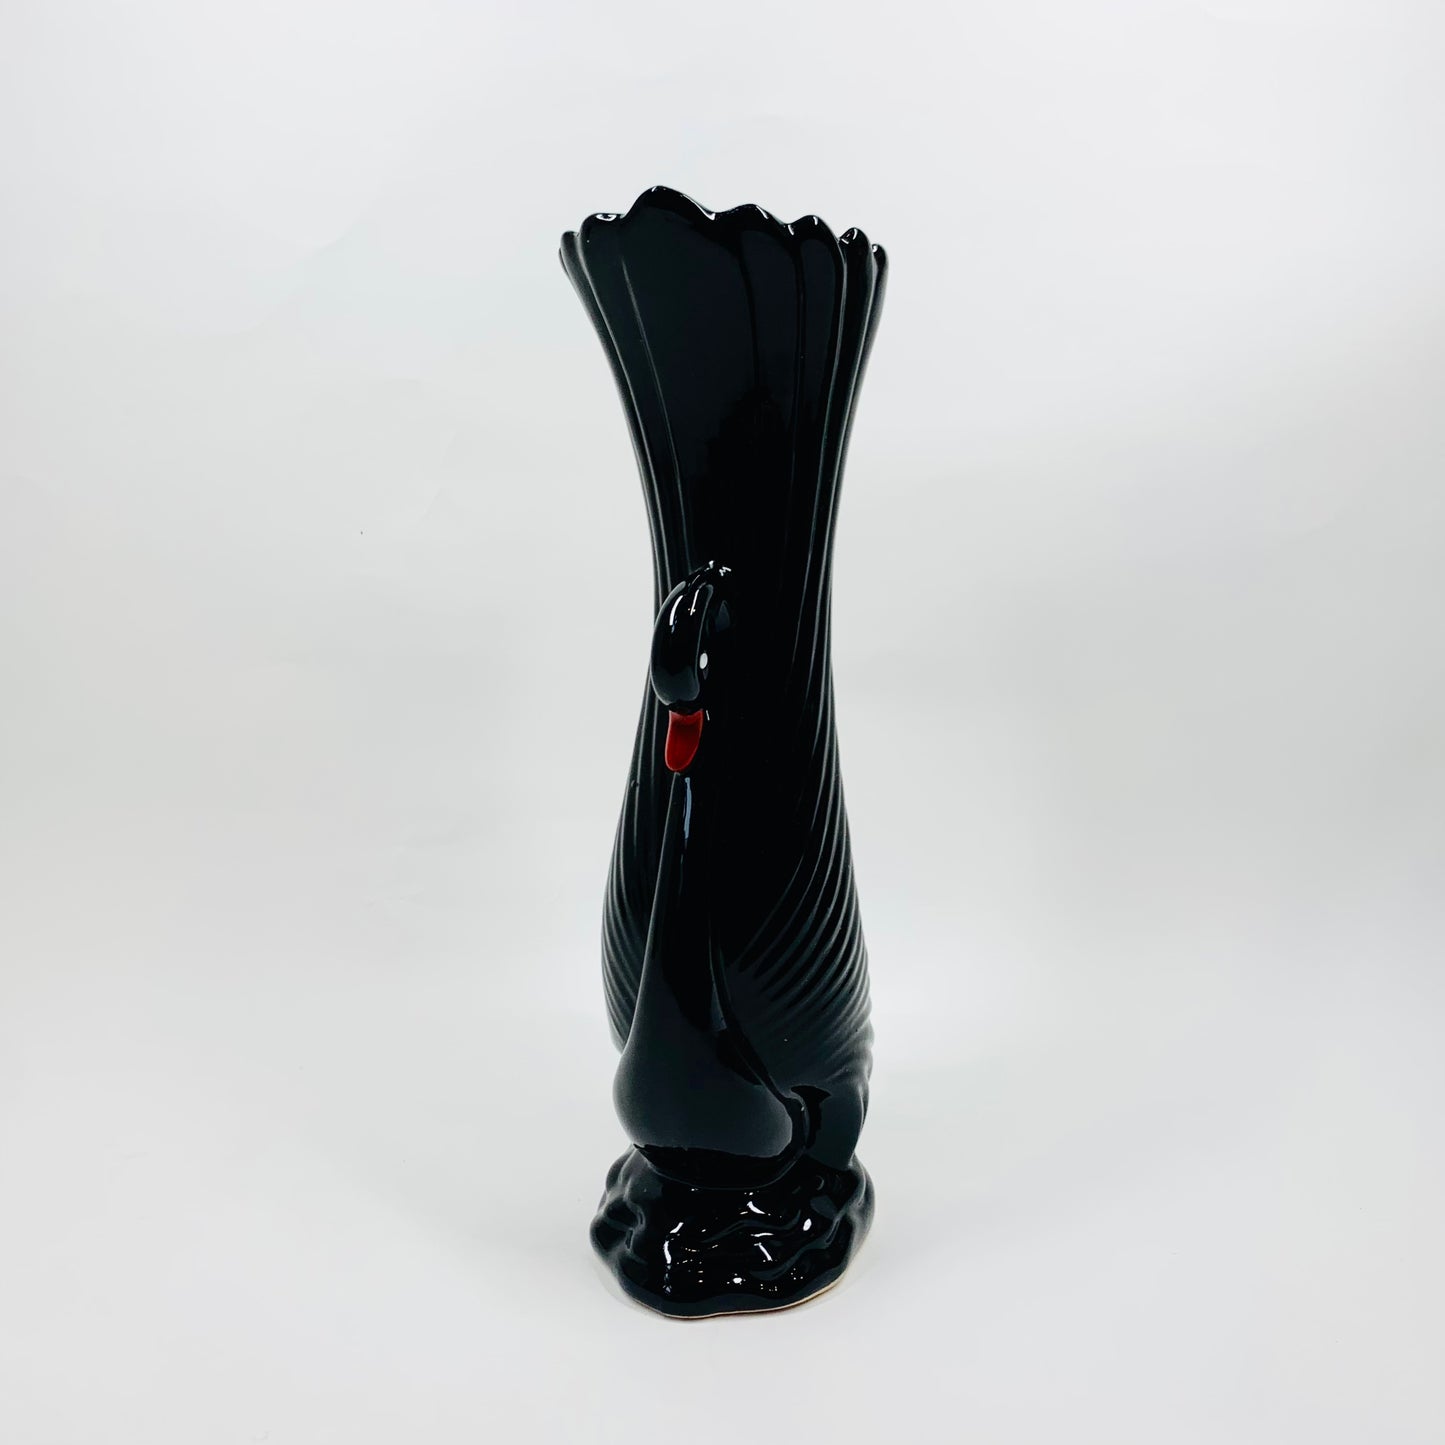 Rare 1970s black porcelain swan vase